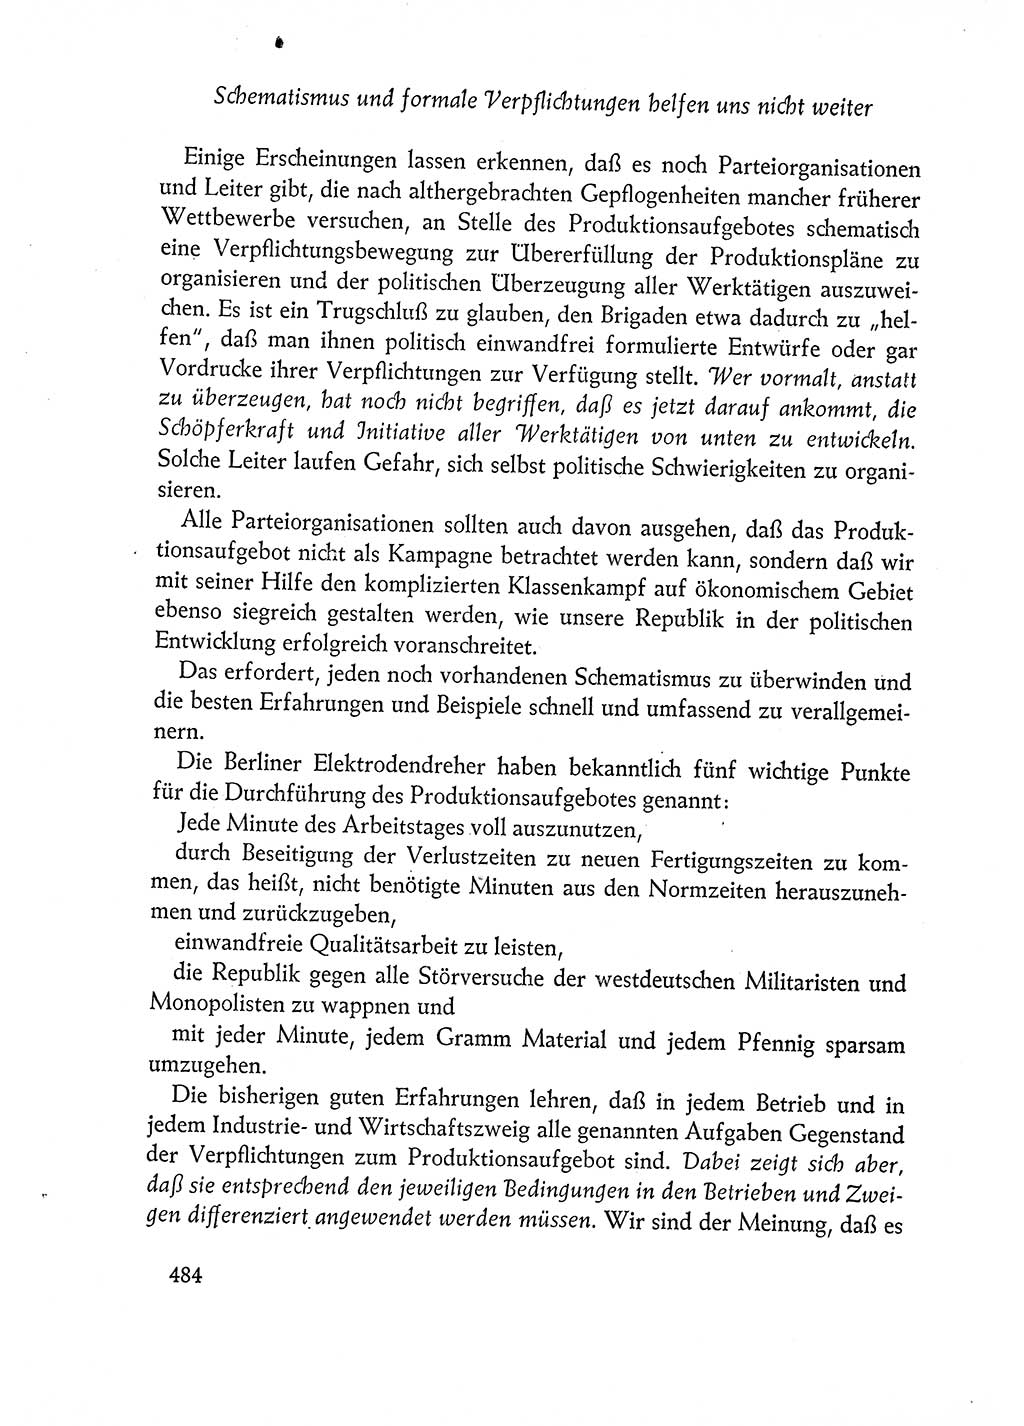 Dokumente der Sozialistischen Einheitspartei Deutschlands (SED) [Deutsche Demokratische Republik (DDR)] 1960-1961, Seite 484 (Dok. SED DDR 1960-1961, S. 484)